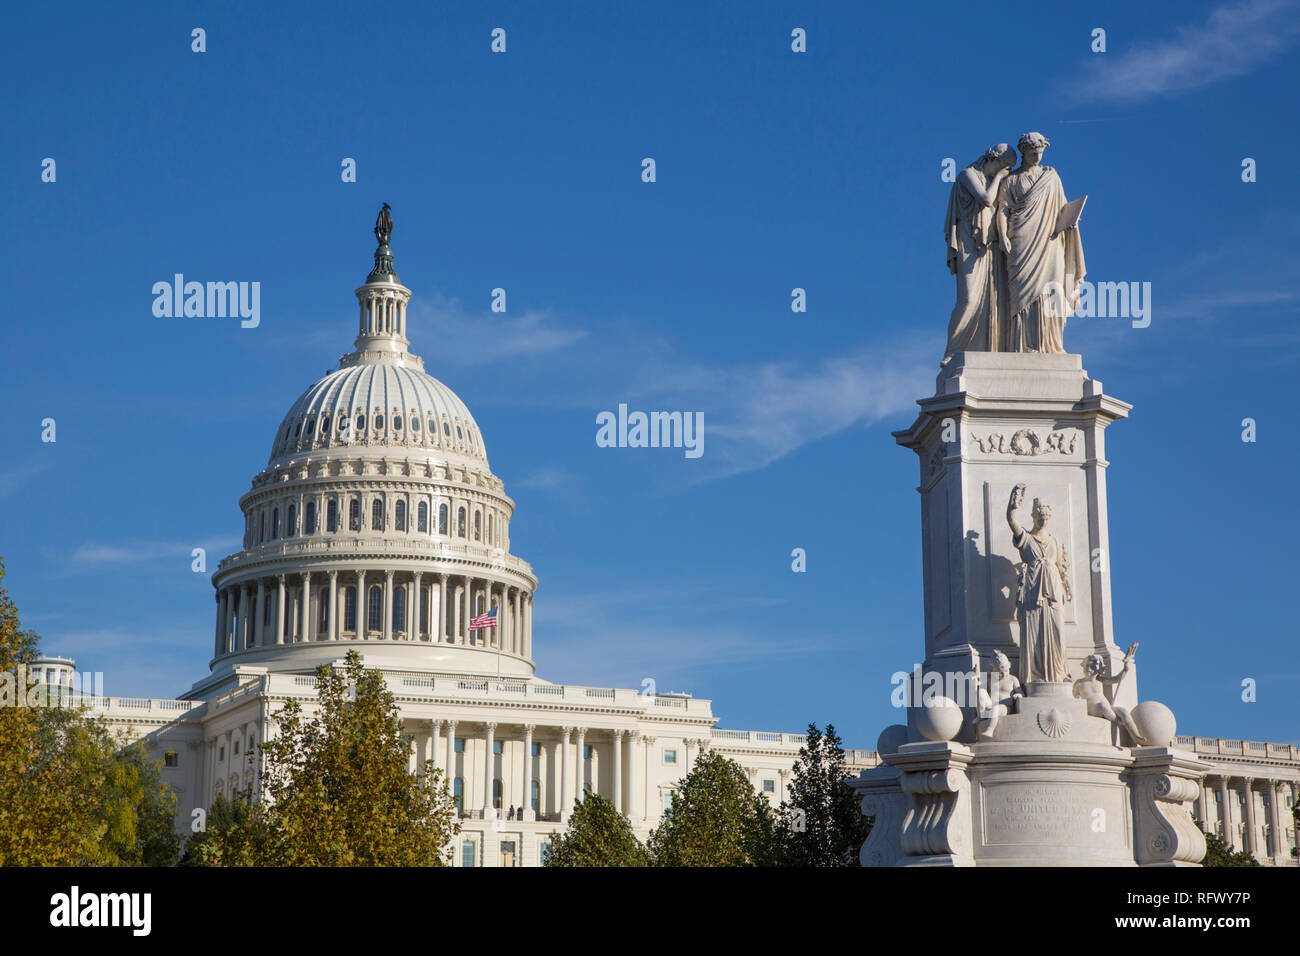 Peace Monument im Vordergrund, United States Capitol Gebäude im Hintergrund, Washington D.C., Vereinigte Staaten von Amerika, Nordamerika Stockfoto